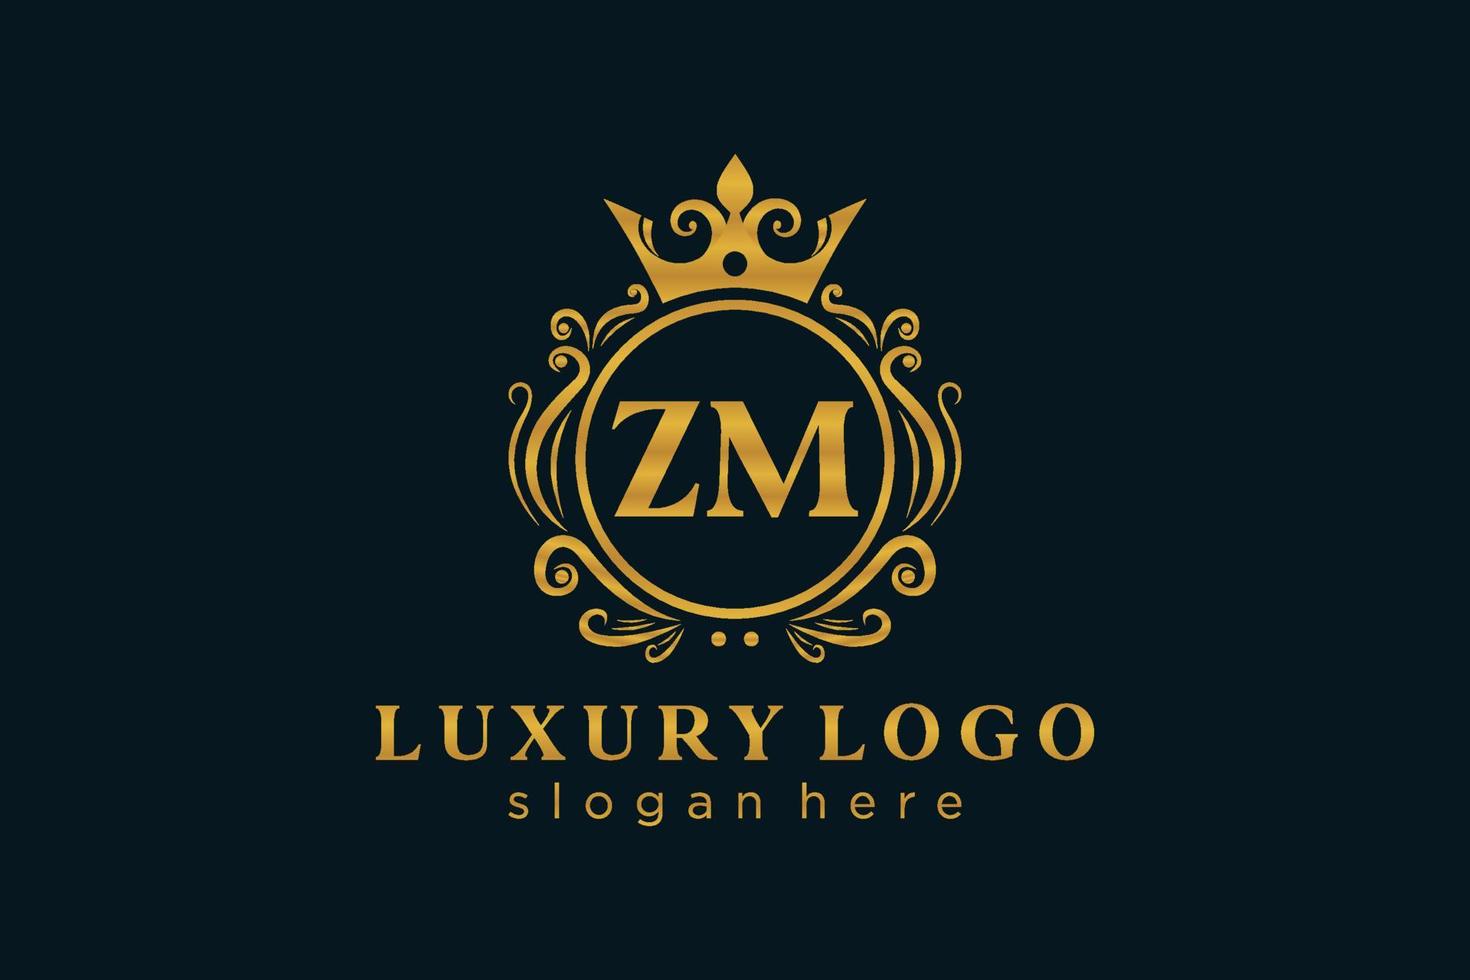 Initial zm Letter Royal Luxury Logo Vorlage in Vektorgrafiken für Restaurant, Lizenzgebühren, Boutique, Café, Hotel, heraldisch, Schmuck, Mode und andere Vektorillustrationen. vektor